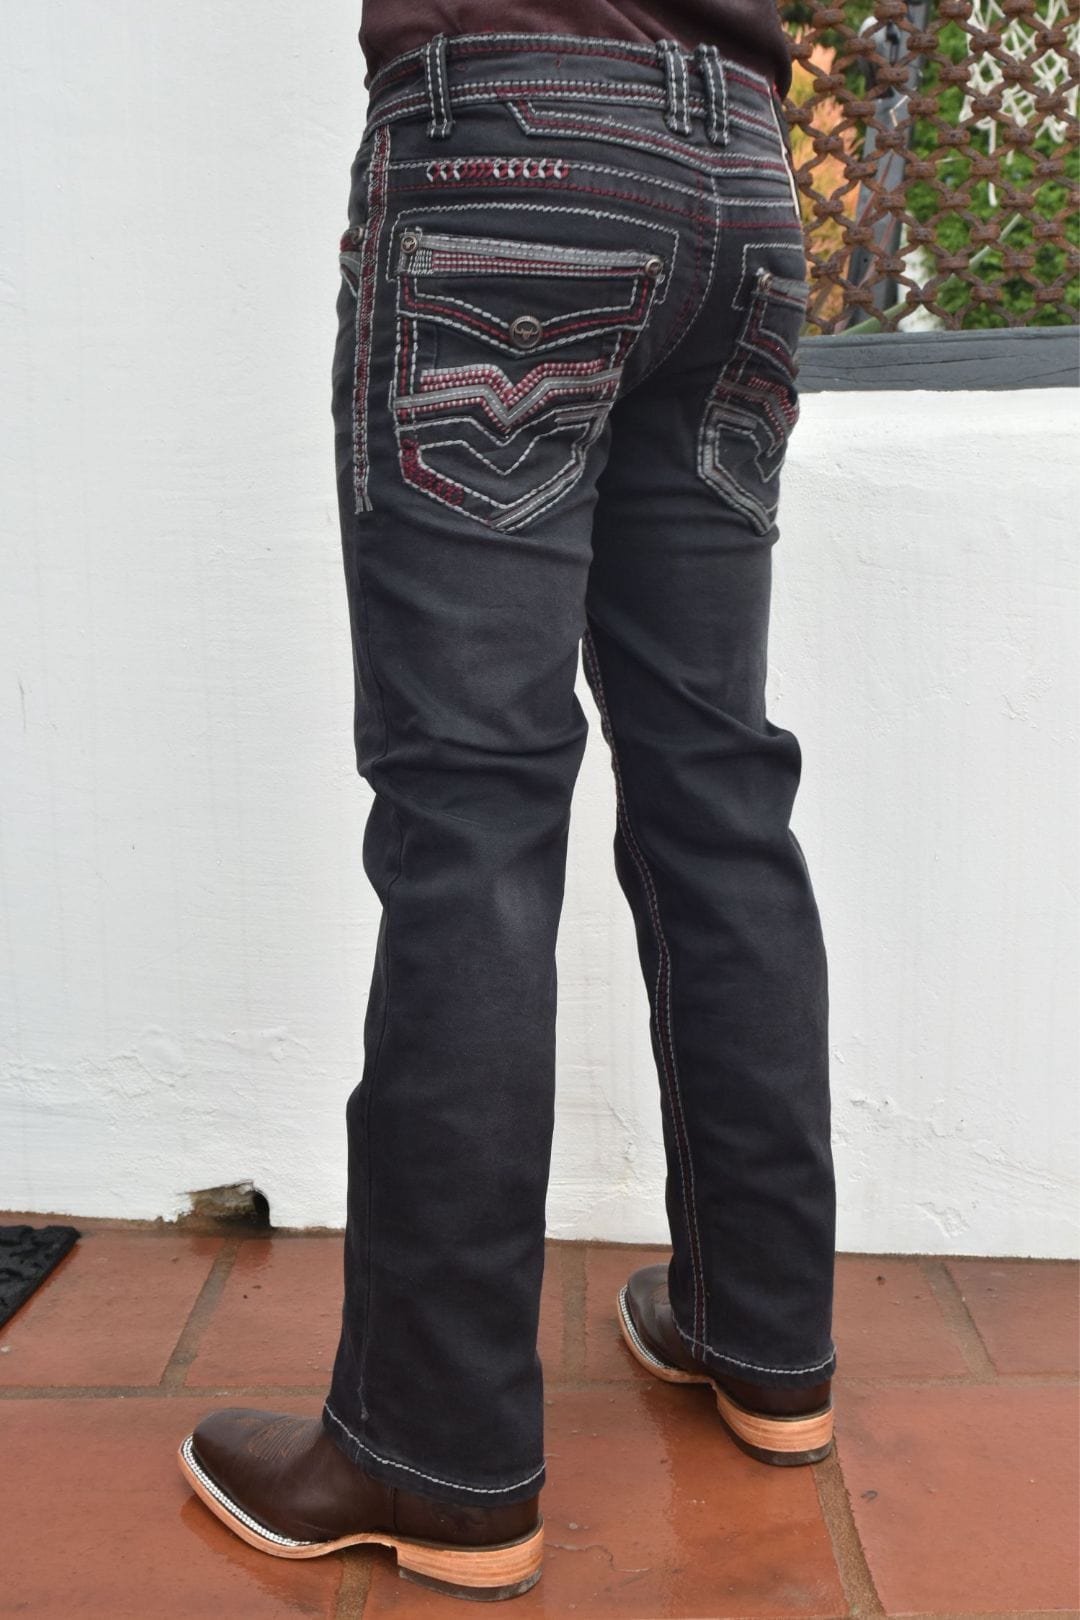 https://www.russells.com/cdn/shop/files/platini-fashion-jeans-holt-kid-s-black-slim-boot-cut-jeans-36812344492190_1200x.jpg?v=1708561596